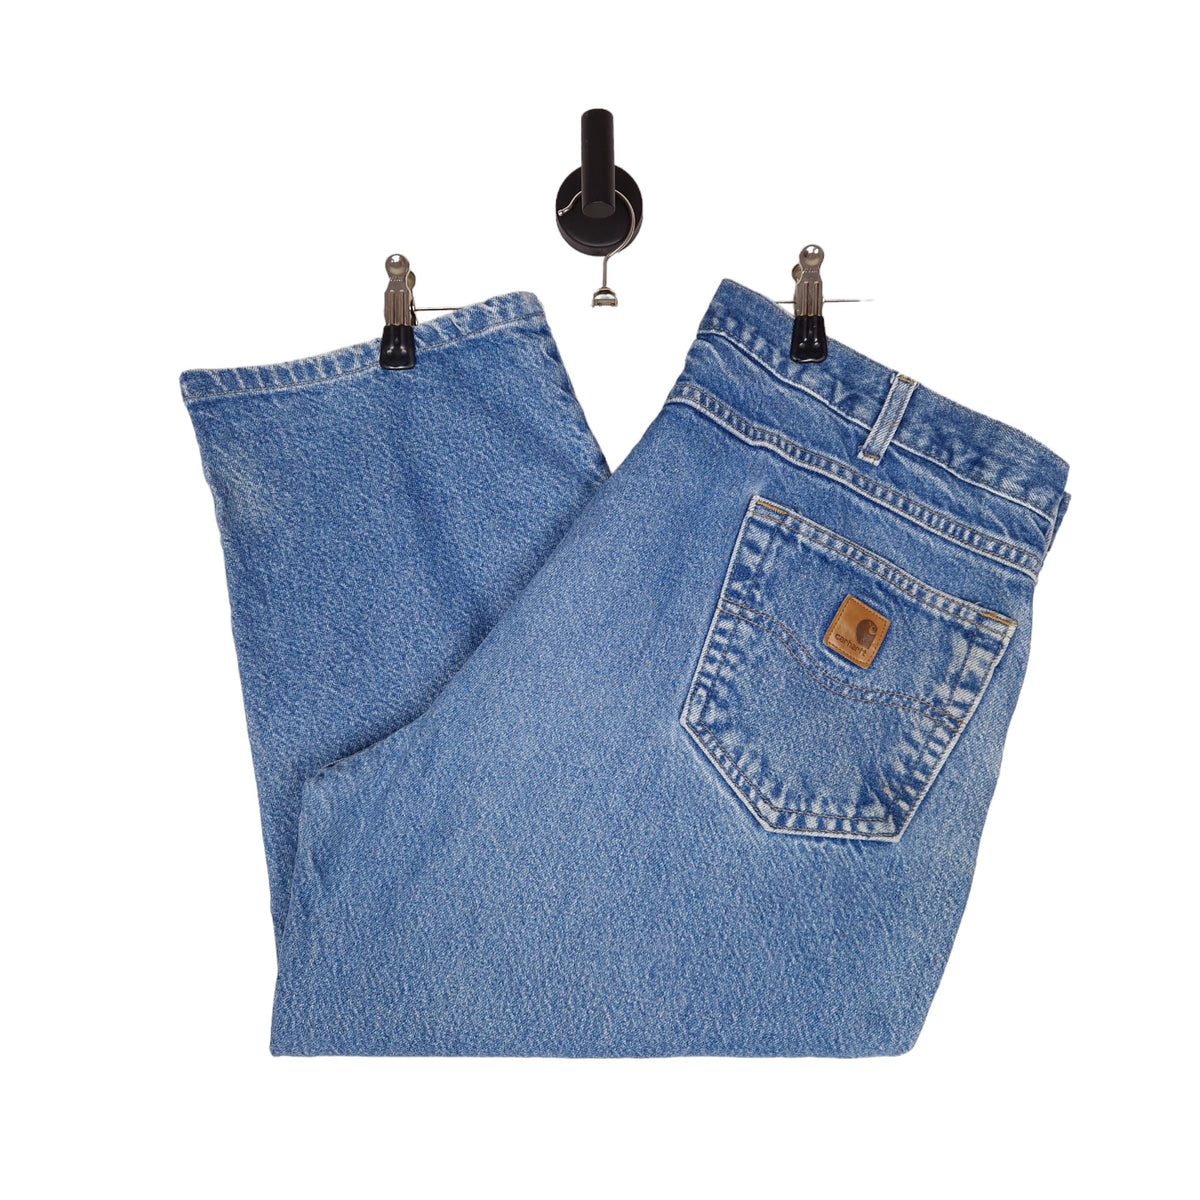 Carhartt Denim Jeans - Size W40 L26